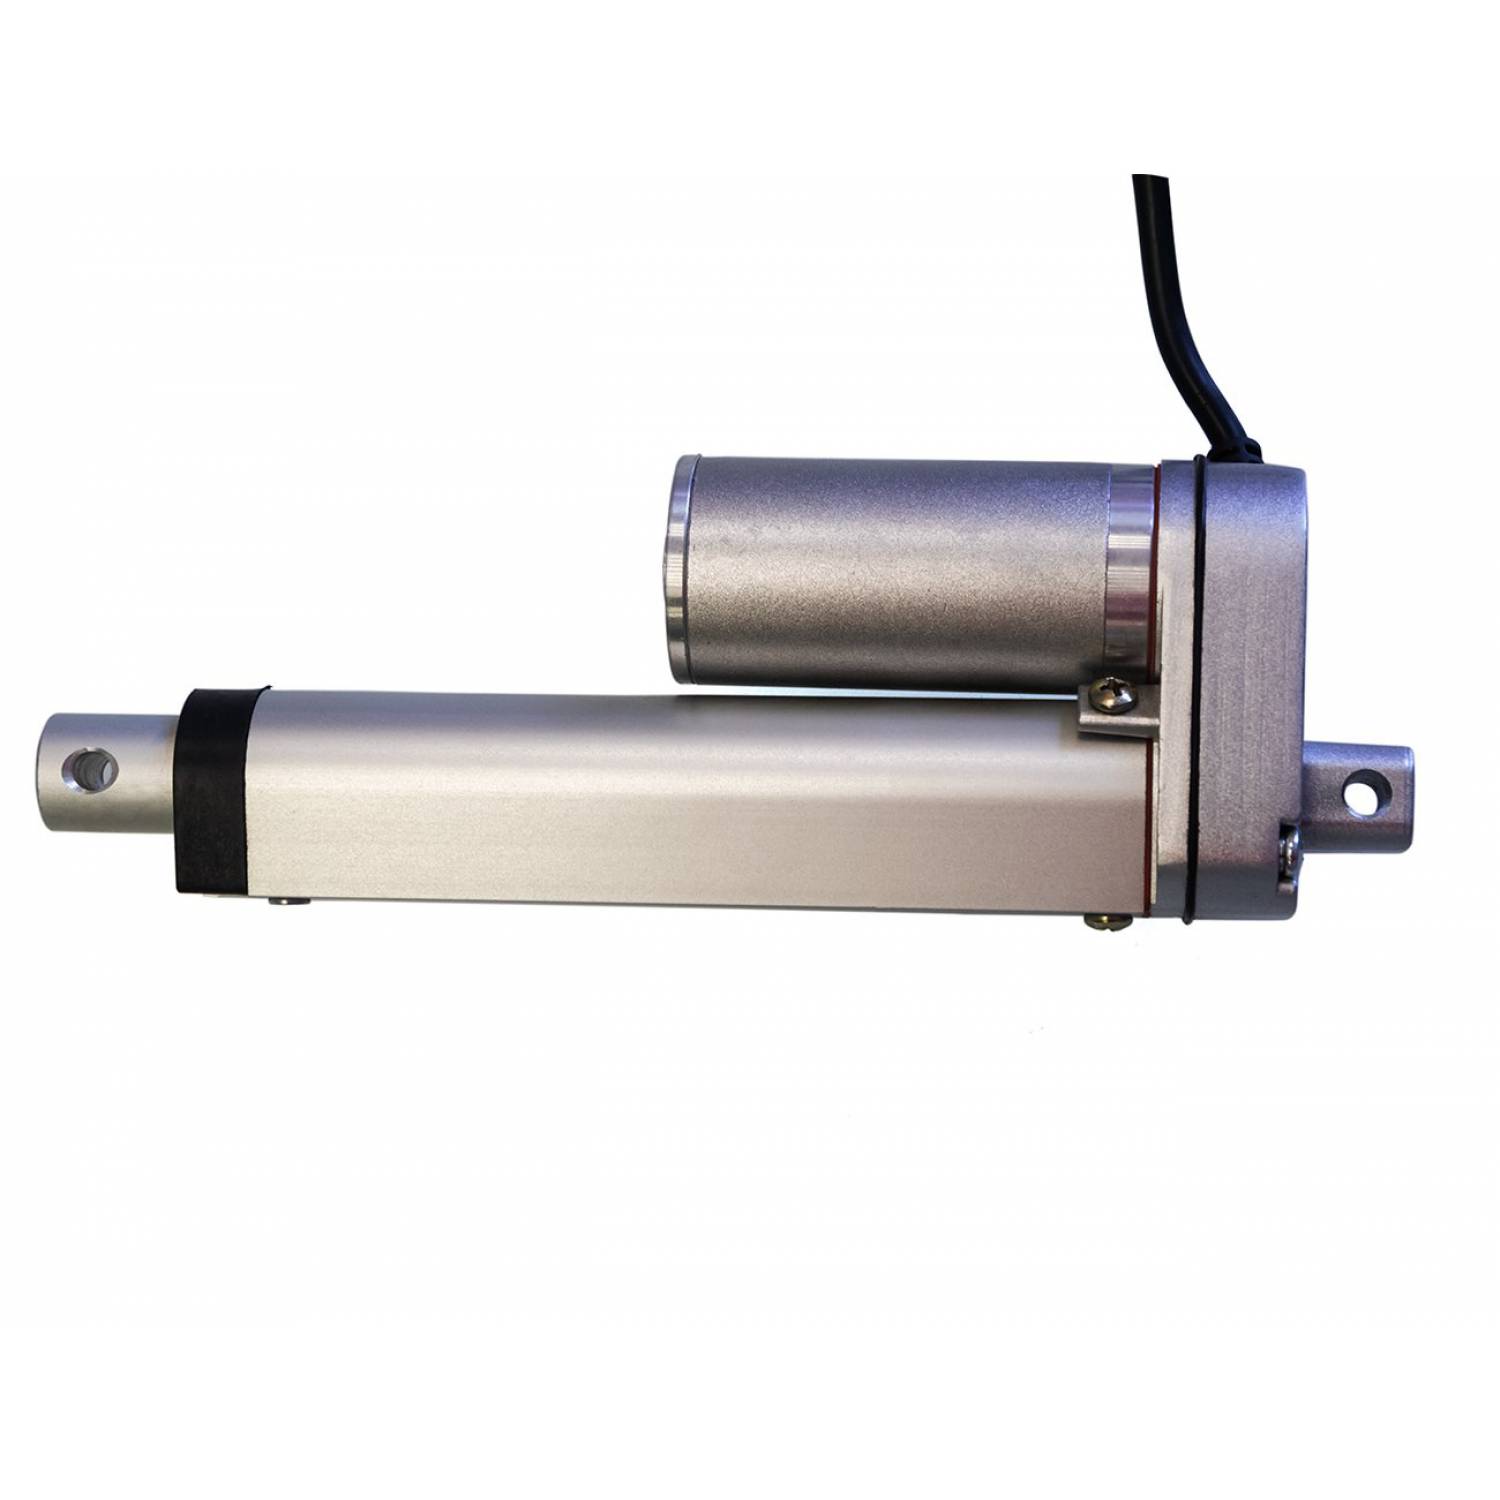 Актуатор (линейный привод) длина 100 мм, питание 12 вольт , нагрузка до 75 кг, скорость 4 мм/сек